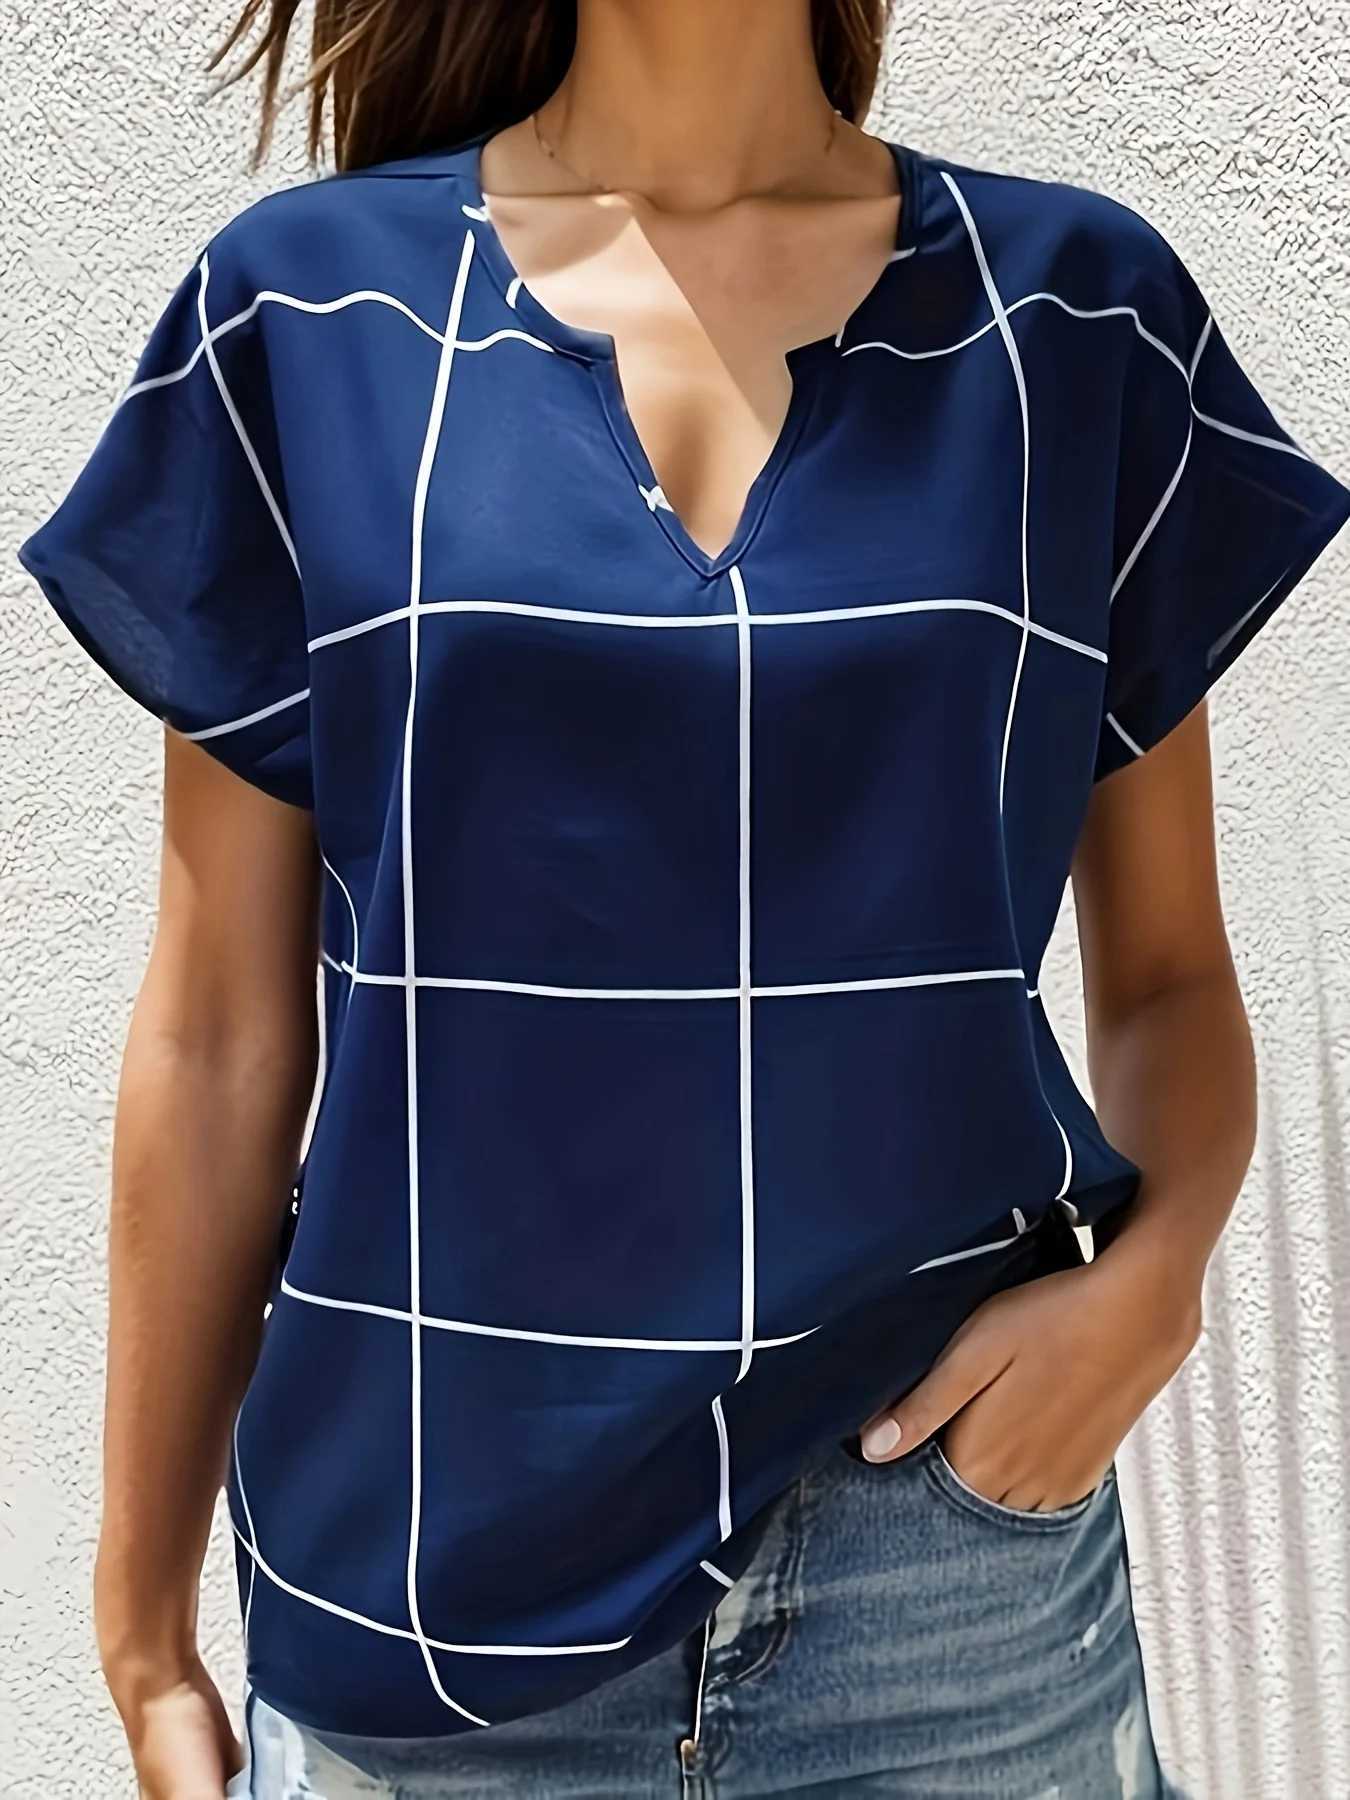 Chemises pour femmes Shirts d'été Fashion Plaid Plaid Blans imprimé Shirts Casual V Neck Short Slve Tops Ladies Basic Chic Blouses Tops Y240426